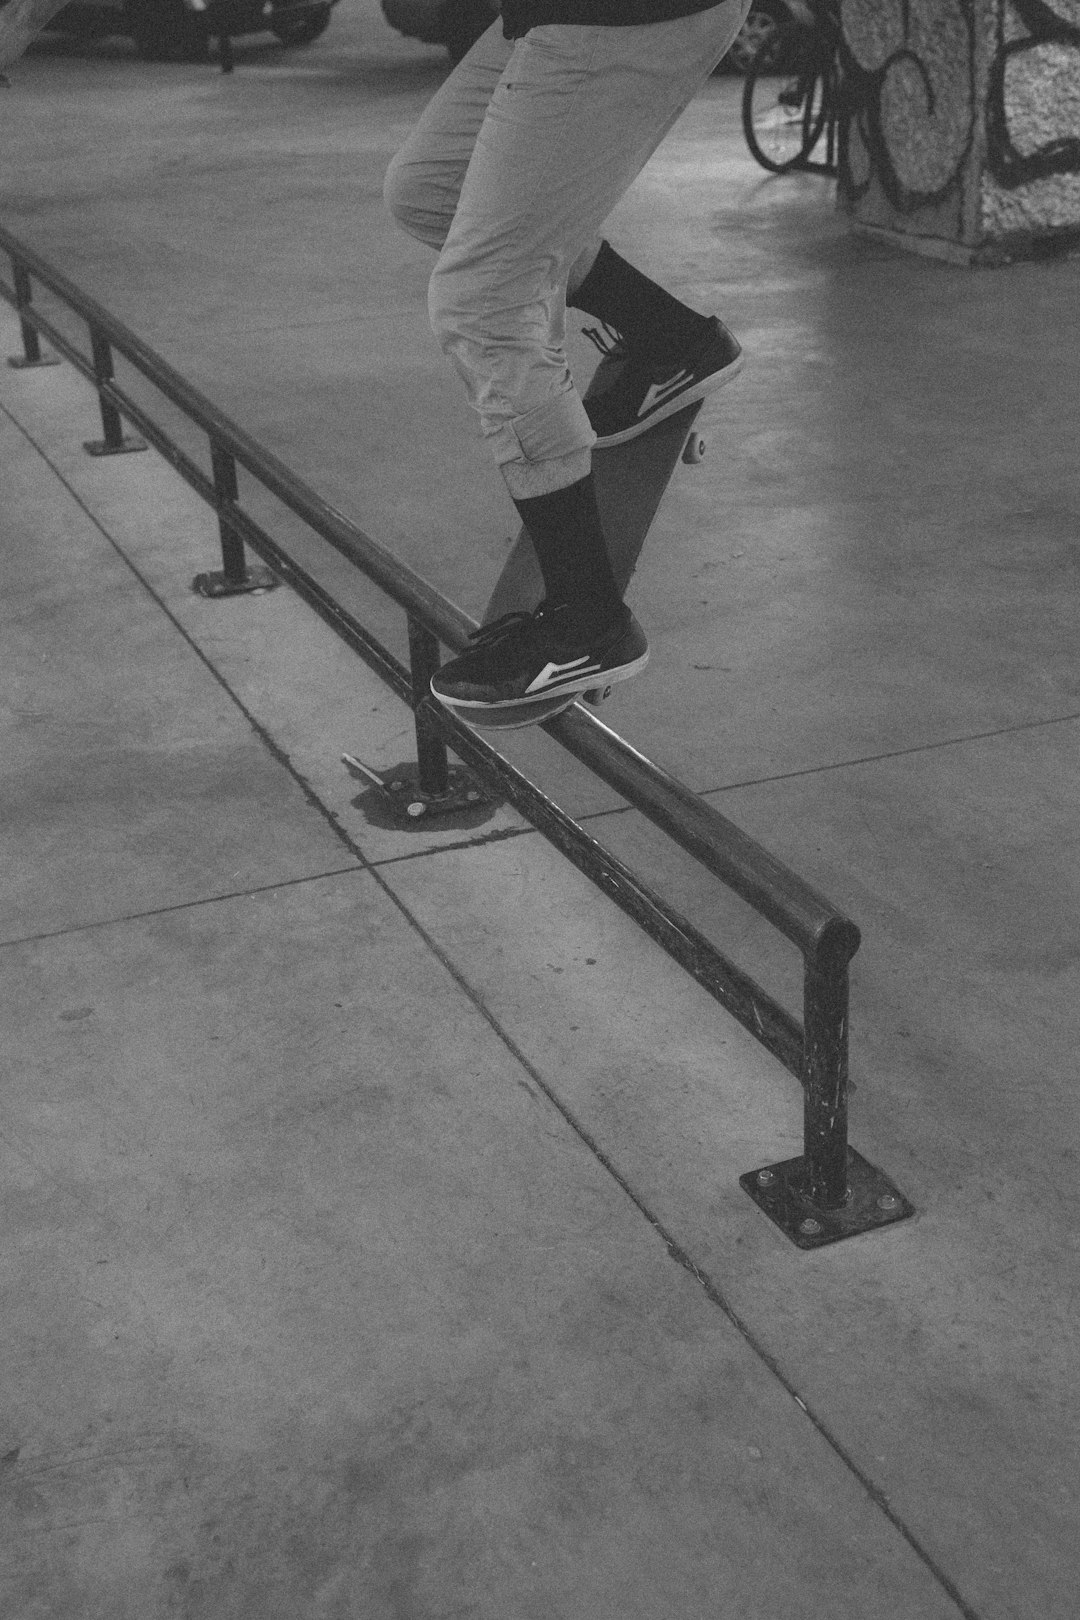 Skateboarding photo spot Van Horne Skatepark Montreal